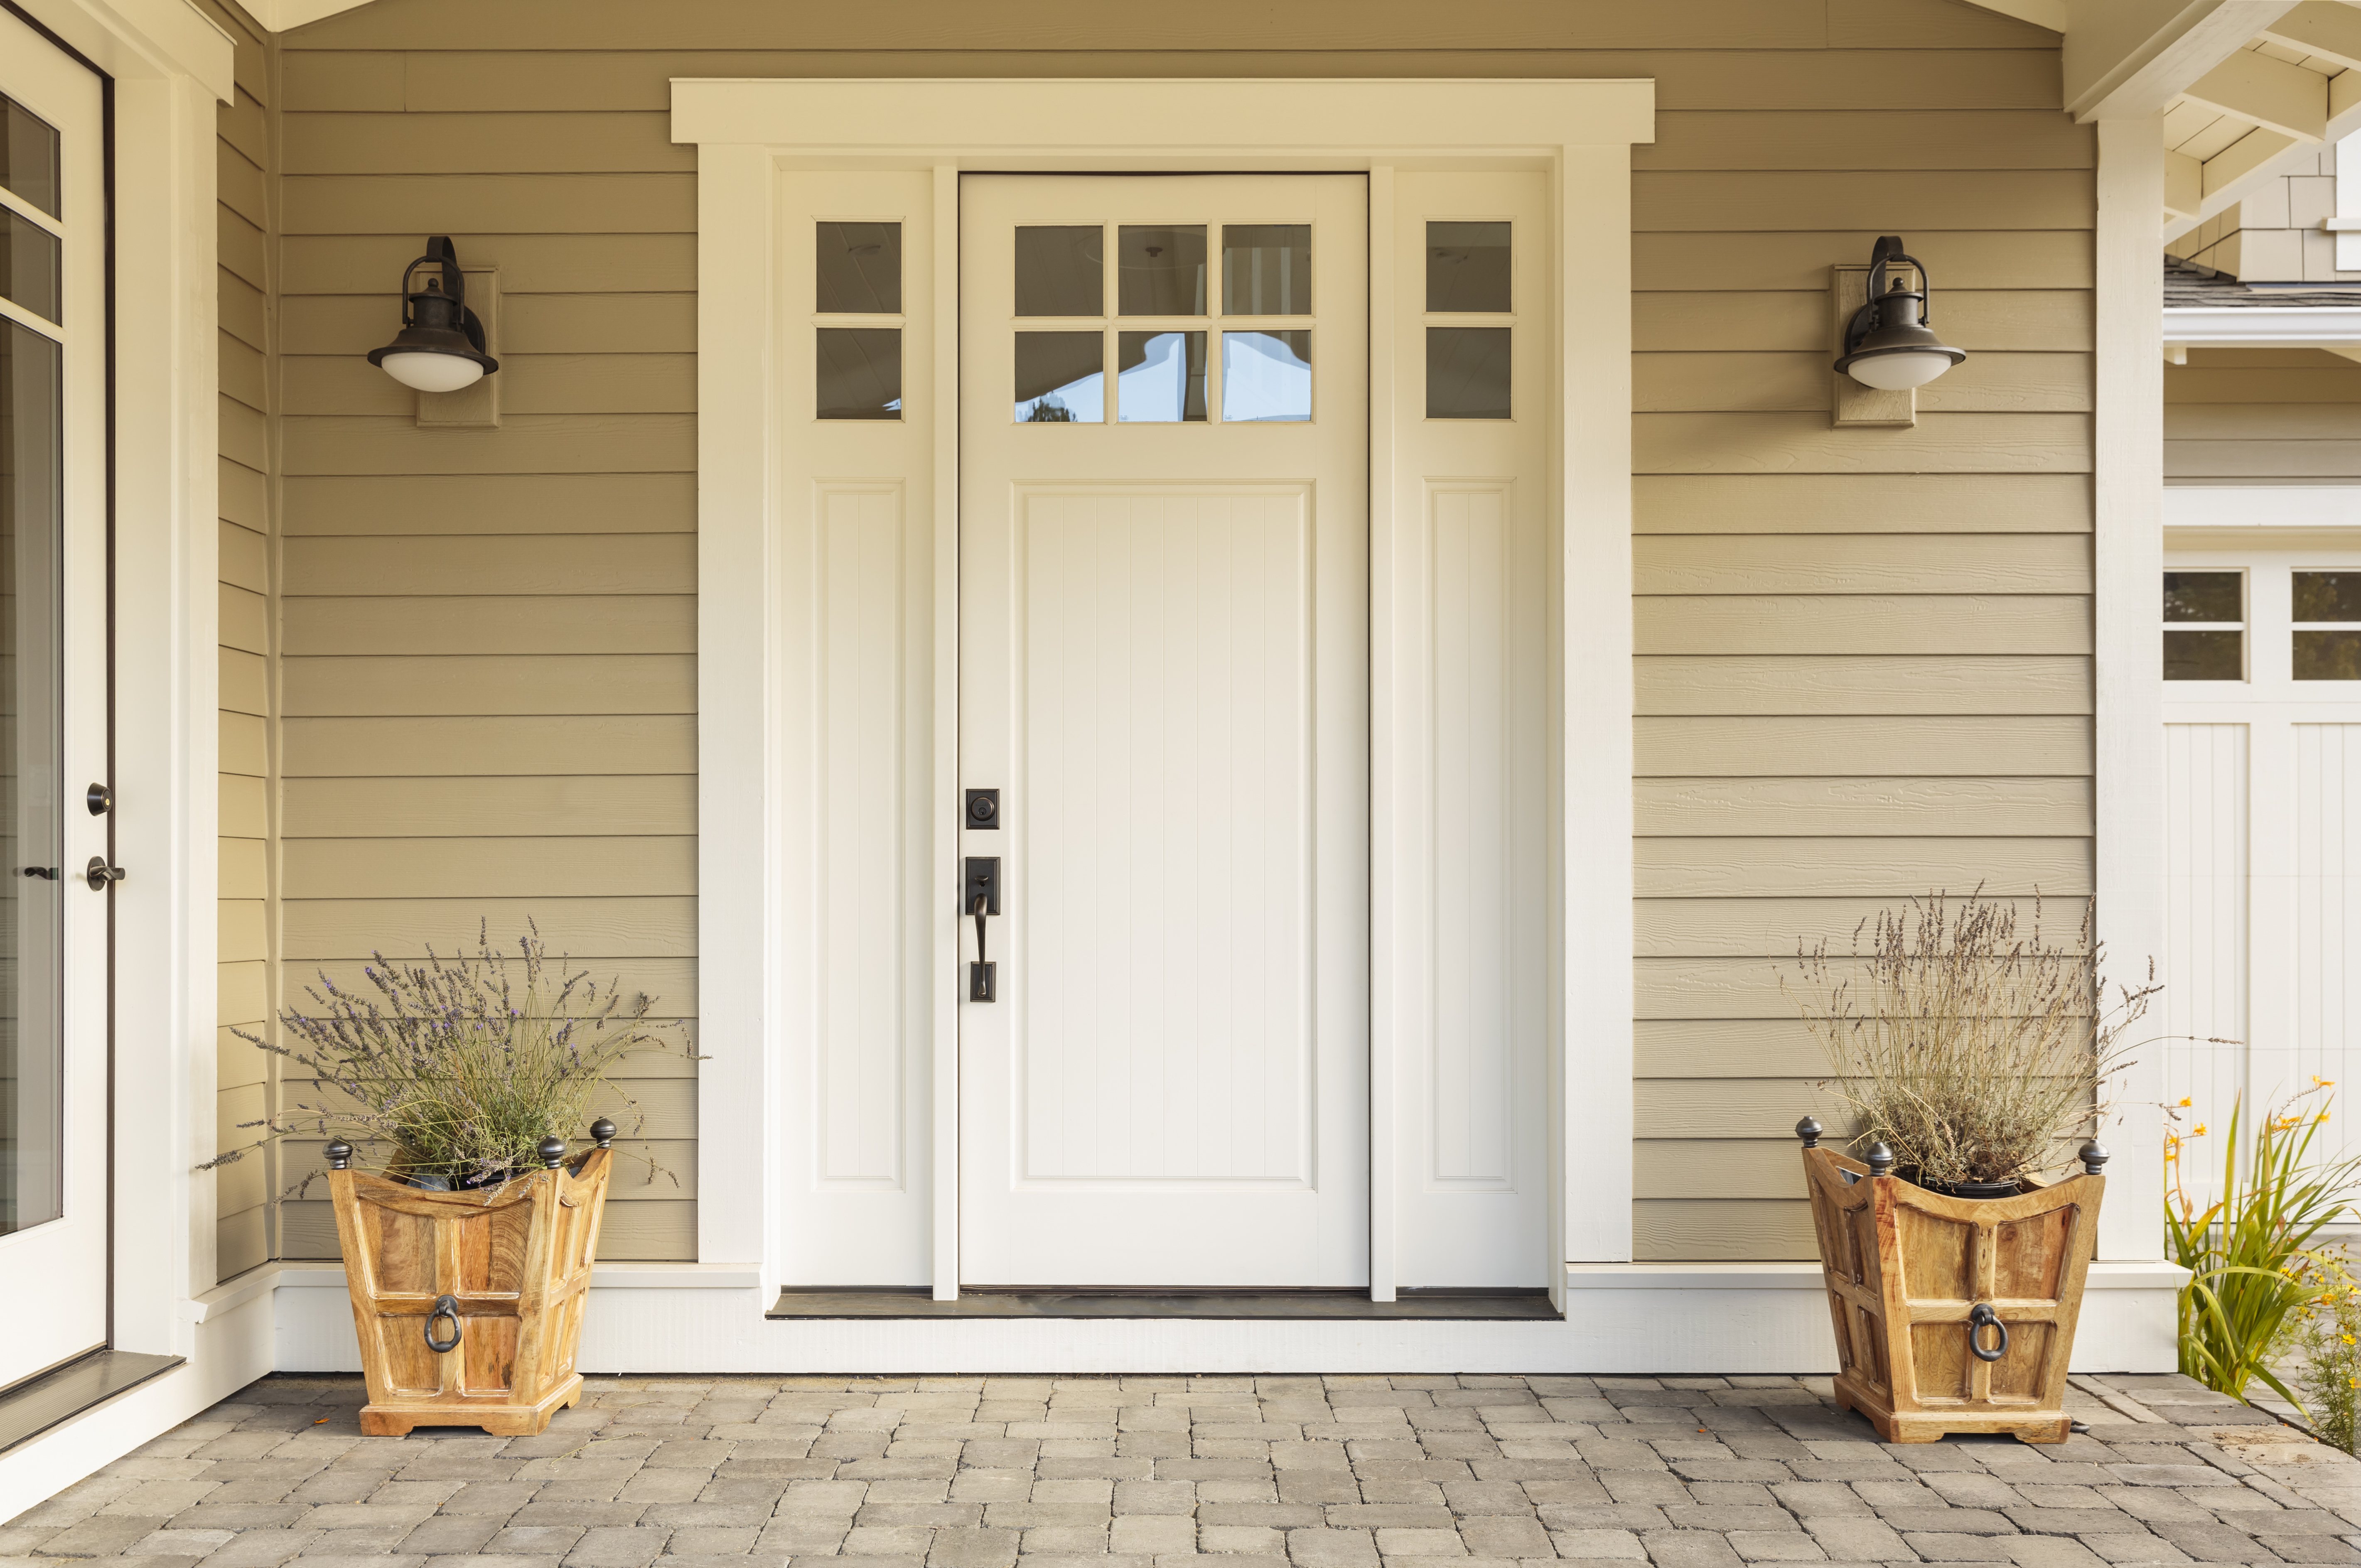 Porte d'entrée blanche avec de petites fenêtres décoratives carrées et des pots de fleurs | Source : Shutterstock